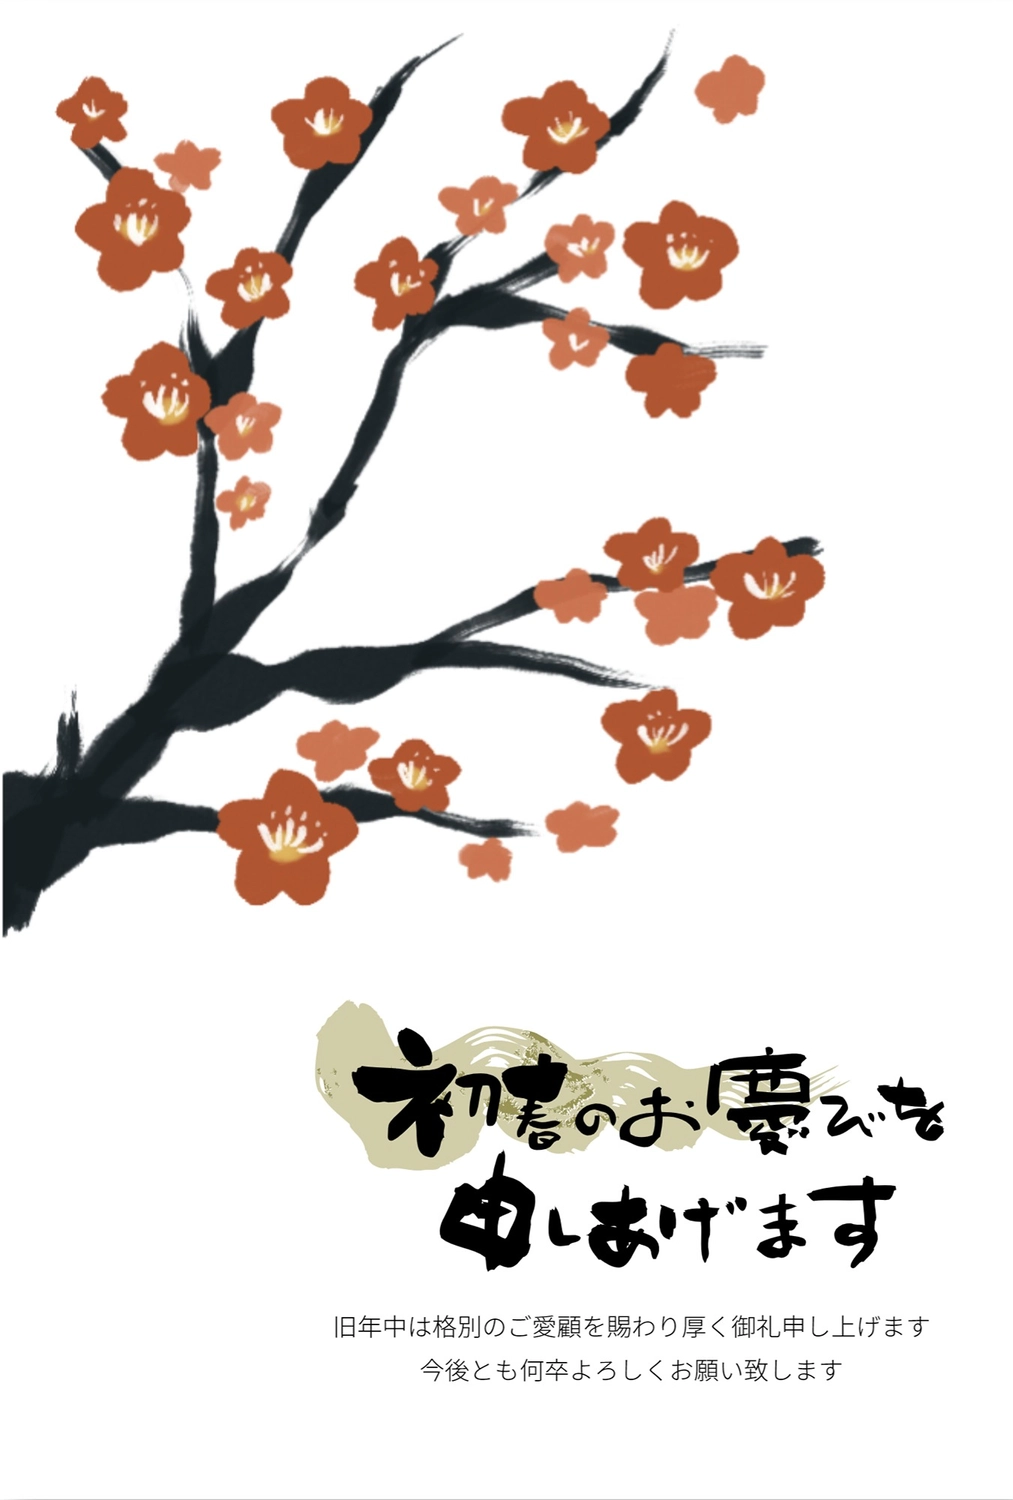 梅の花の年賀状　縦, bông hoa, lề, 筆字, Thiệp năm mới mẫu